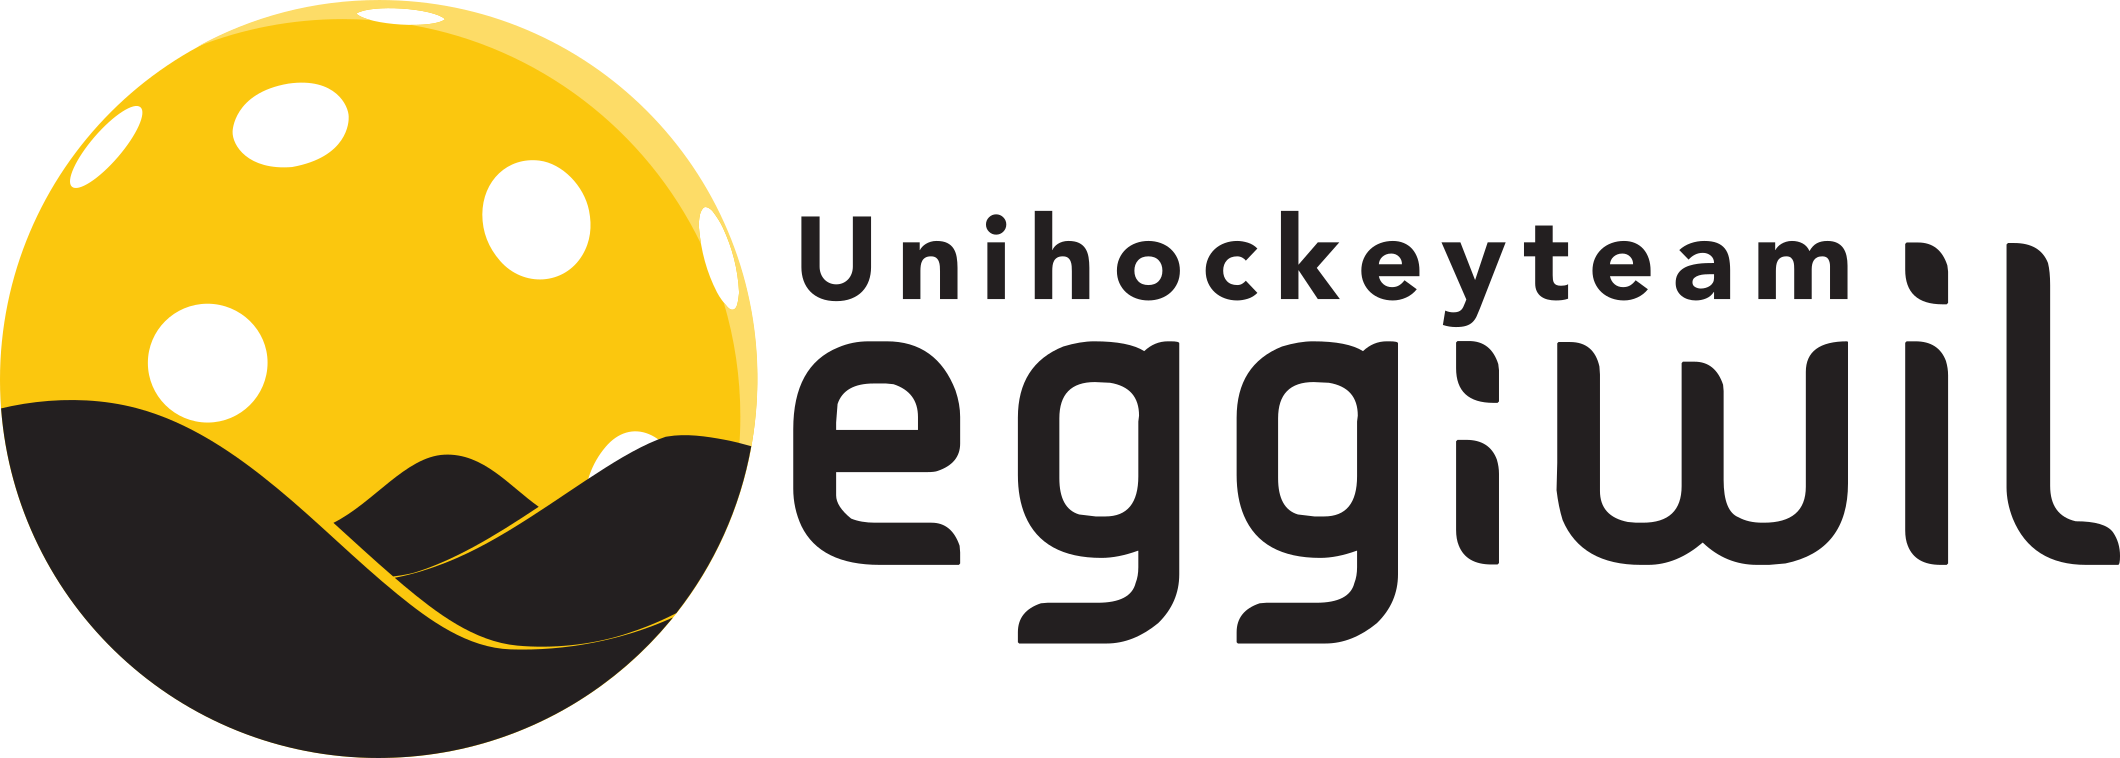 01_UHT_Eggiwil_Logo.jpg